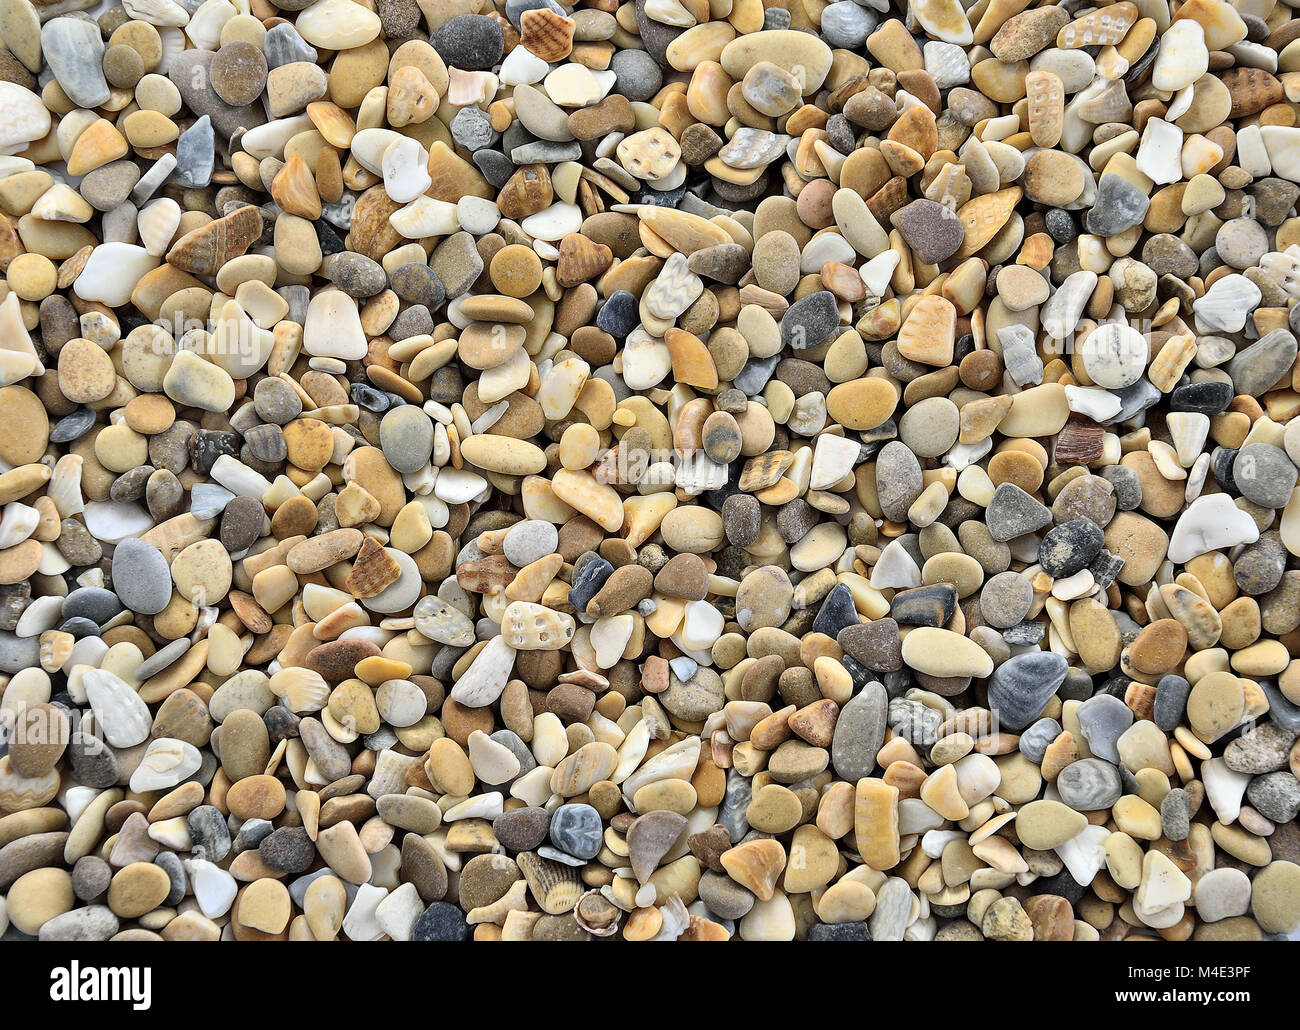 Colorful Pebbles of Sea coast Stock Photo